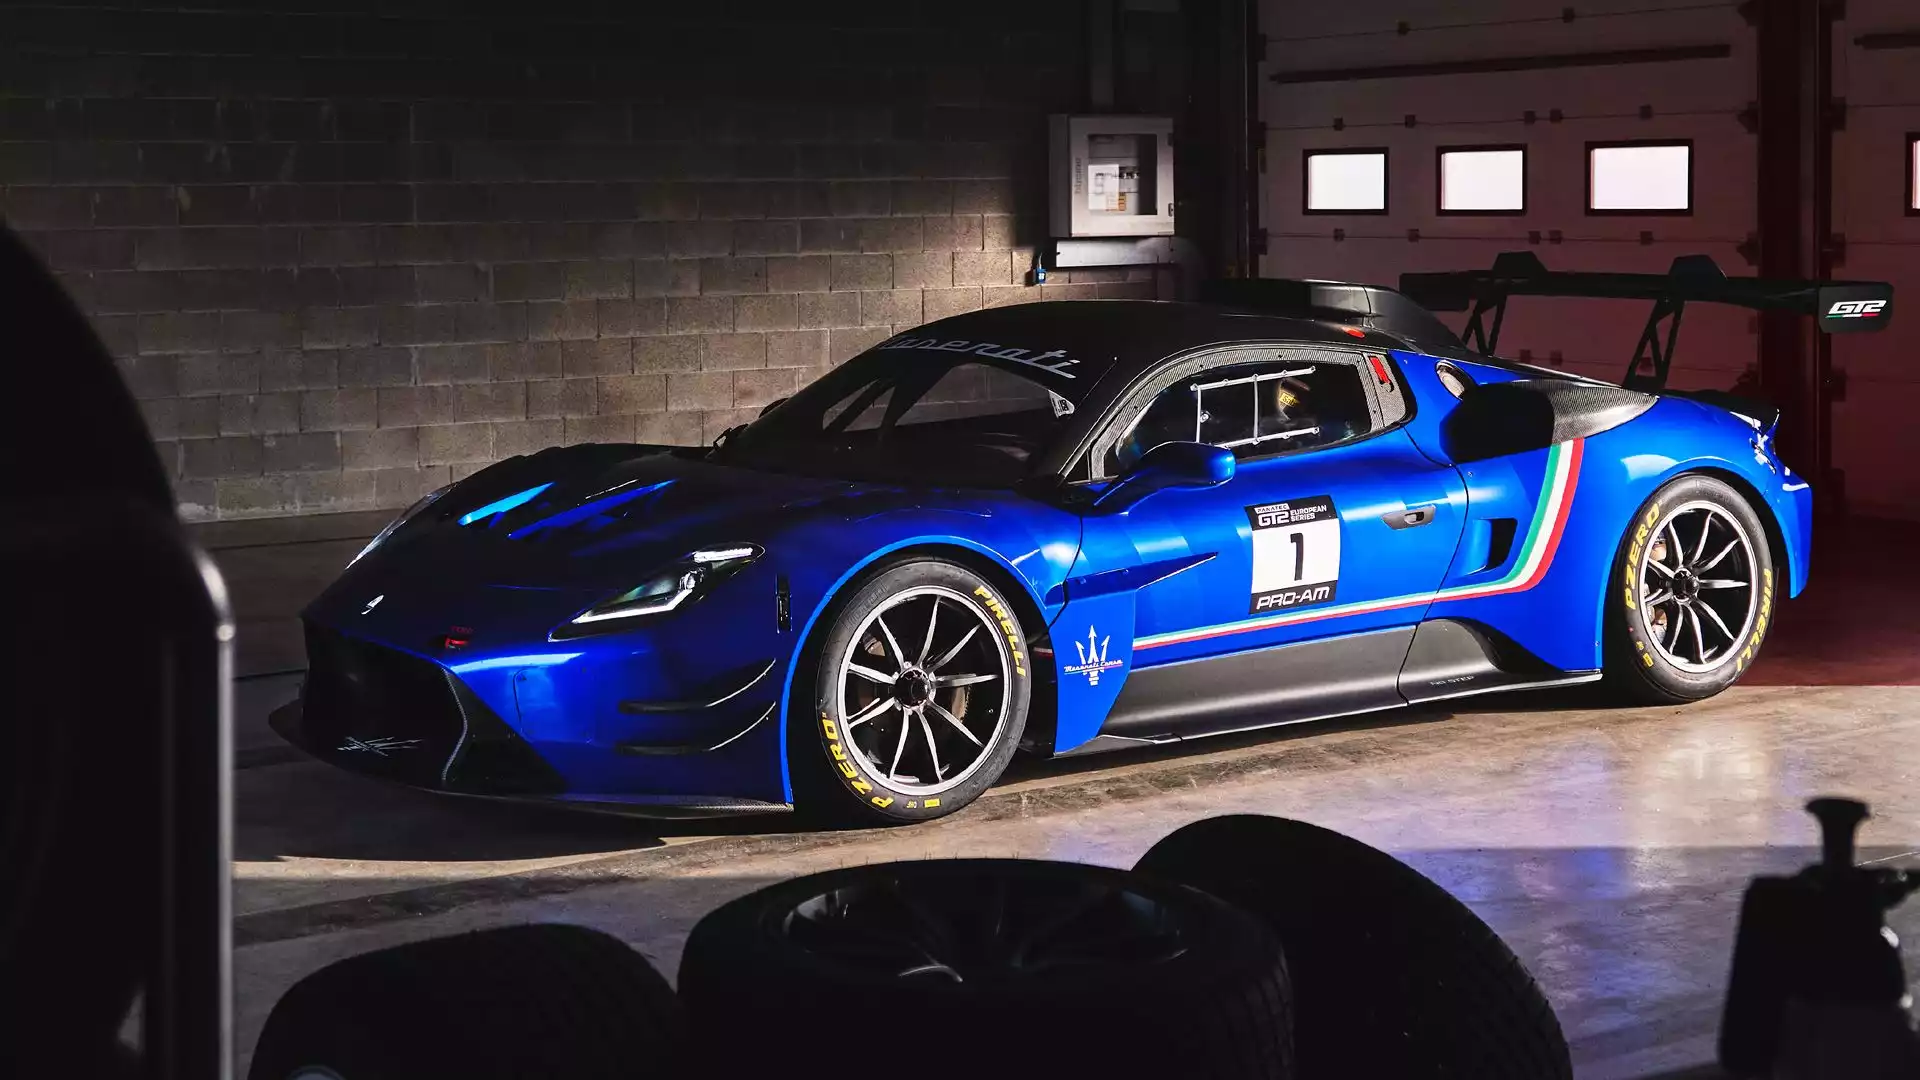 La vettura è stata pensata e progettata per prendere parte a campionati o singoli eventi riservati alla classe GT2